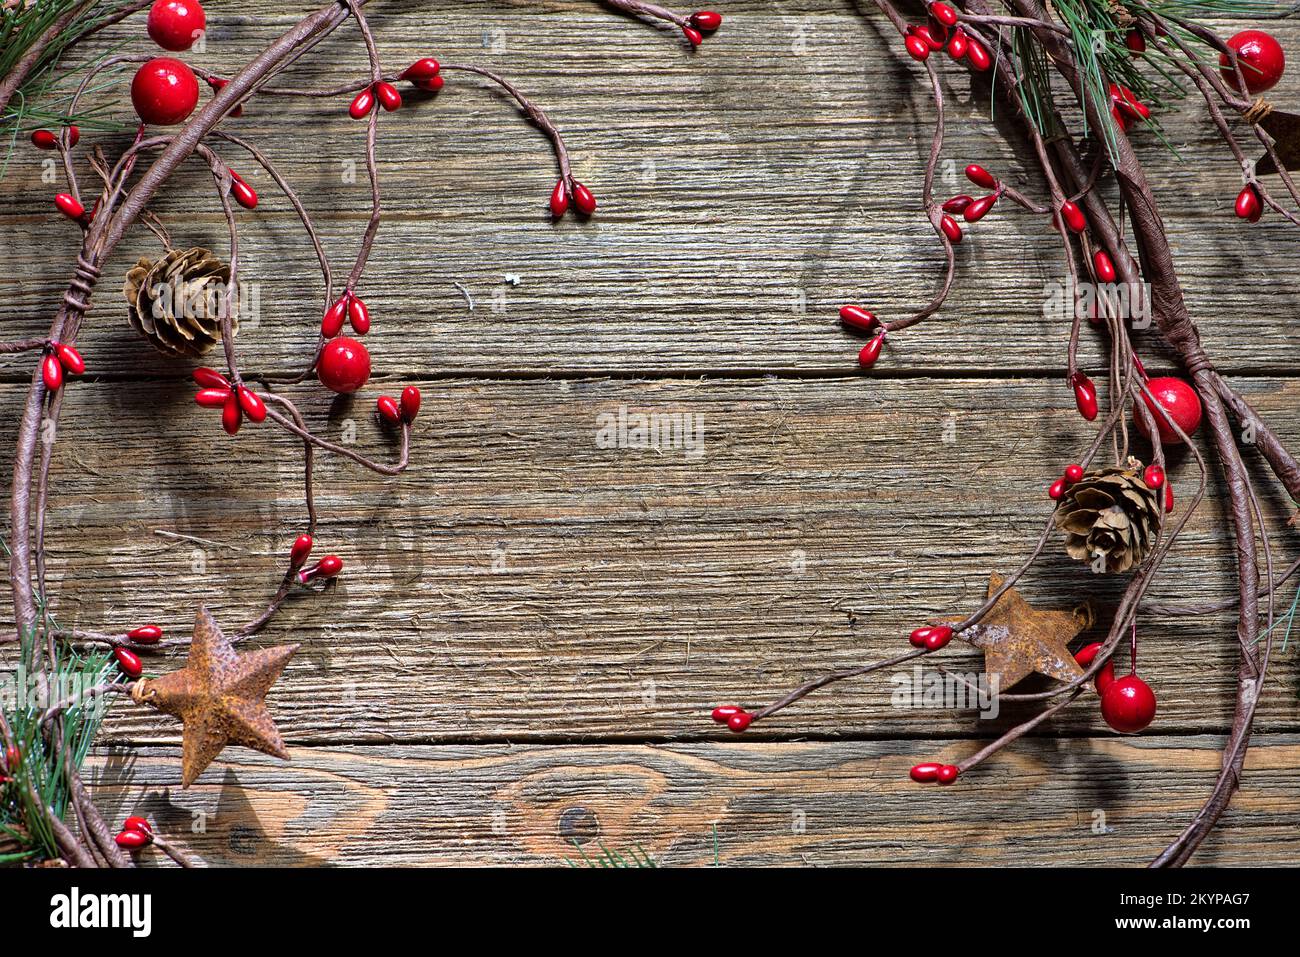 Vitigno tradizionale decorazione natalizia, stile casale, su sfondo ligneo, senza testo Foto Stock